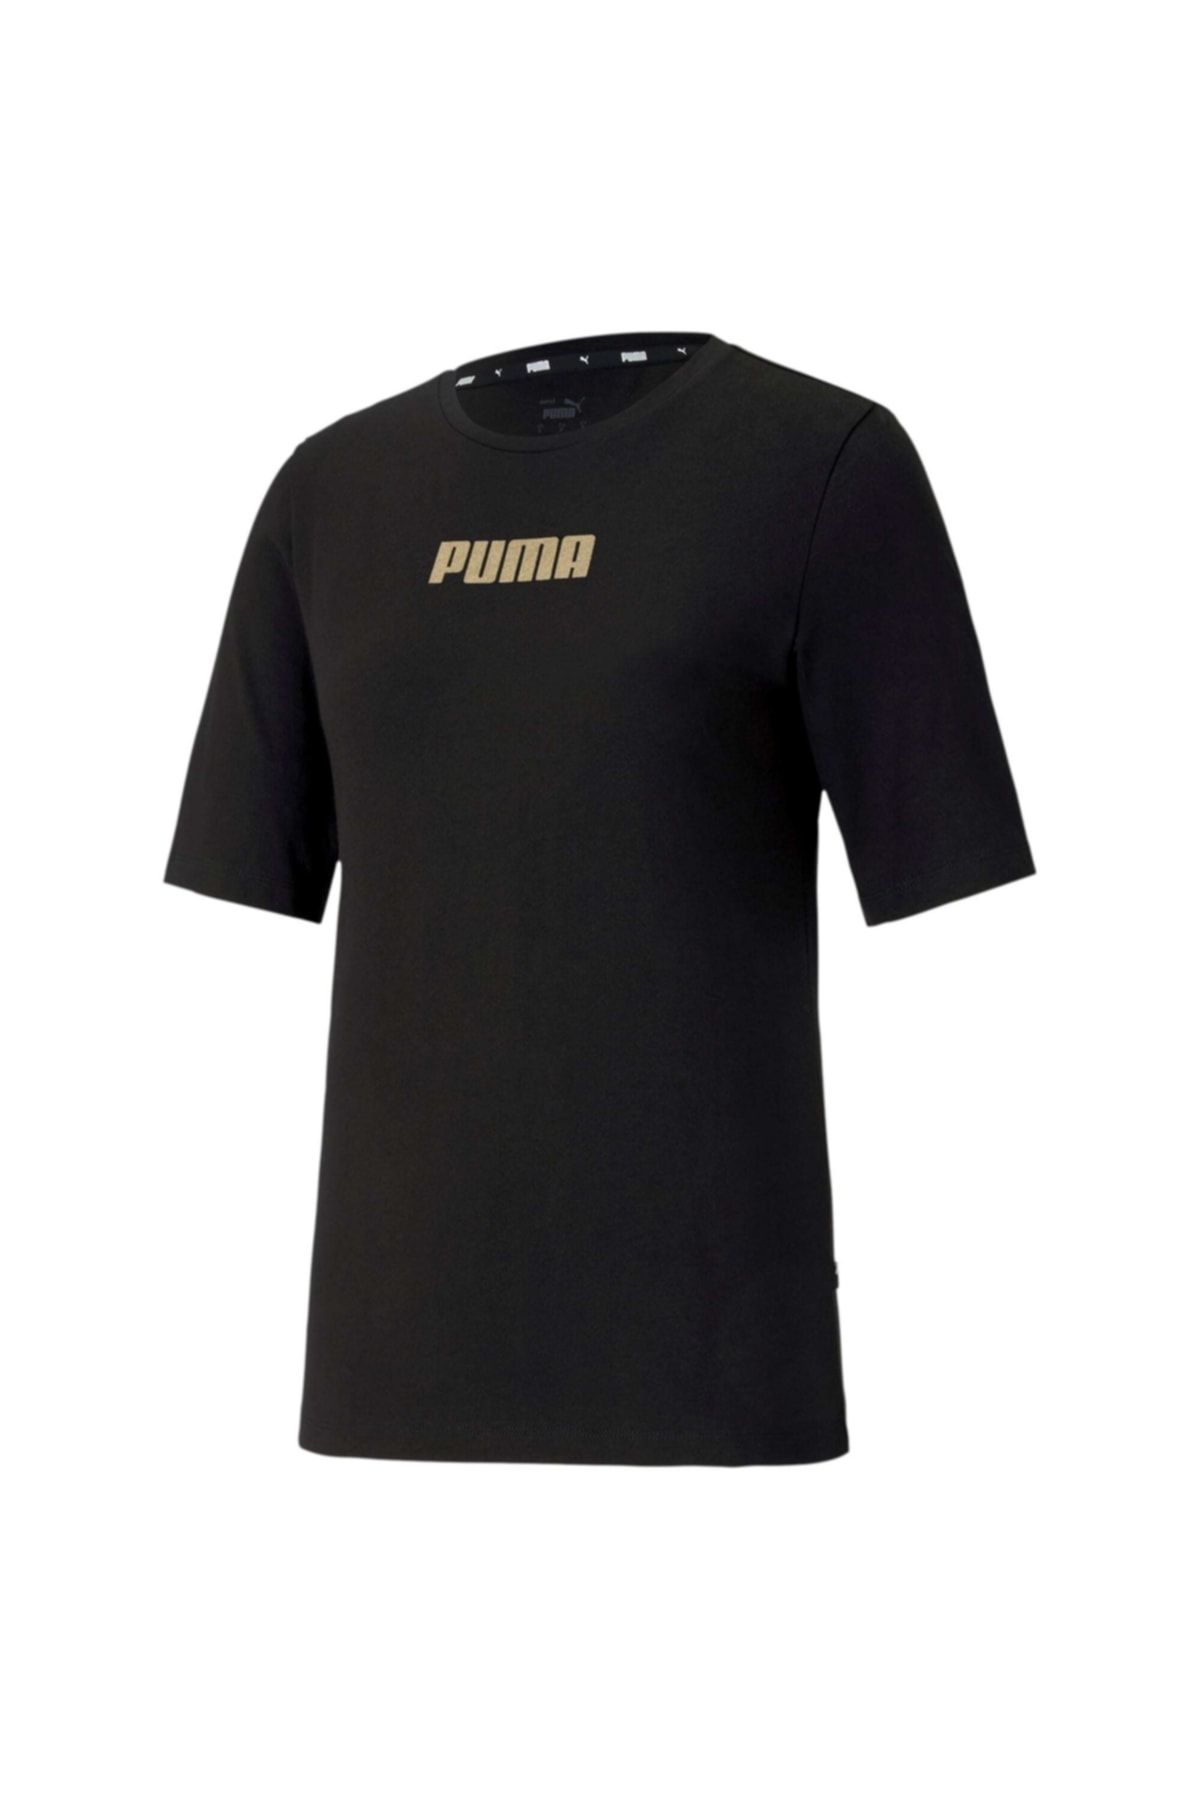 Puma Modern Kadın Kısa Kol T-shirt